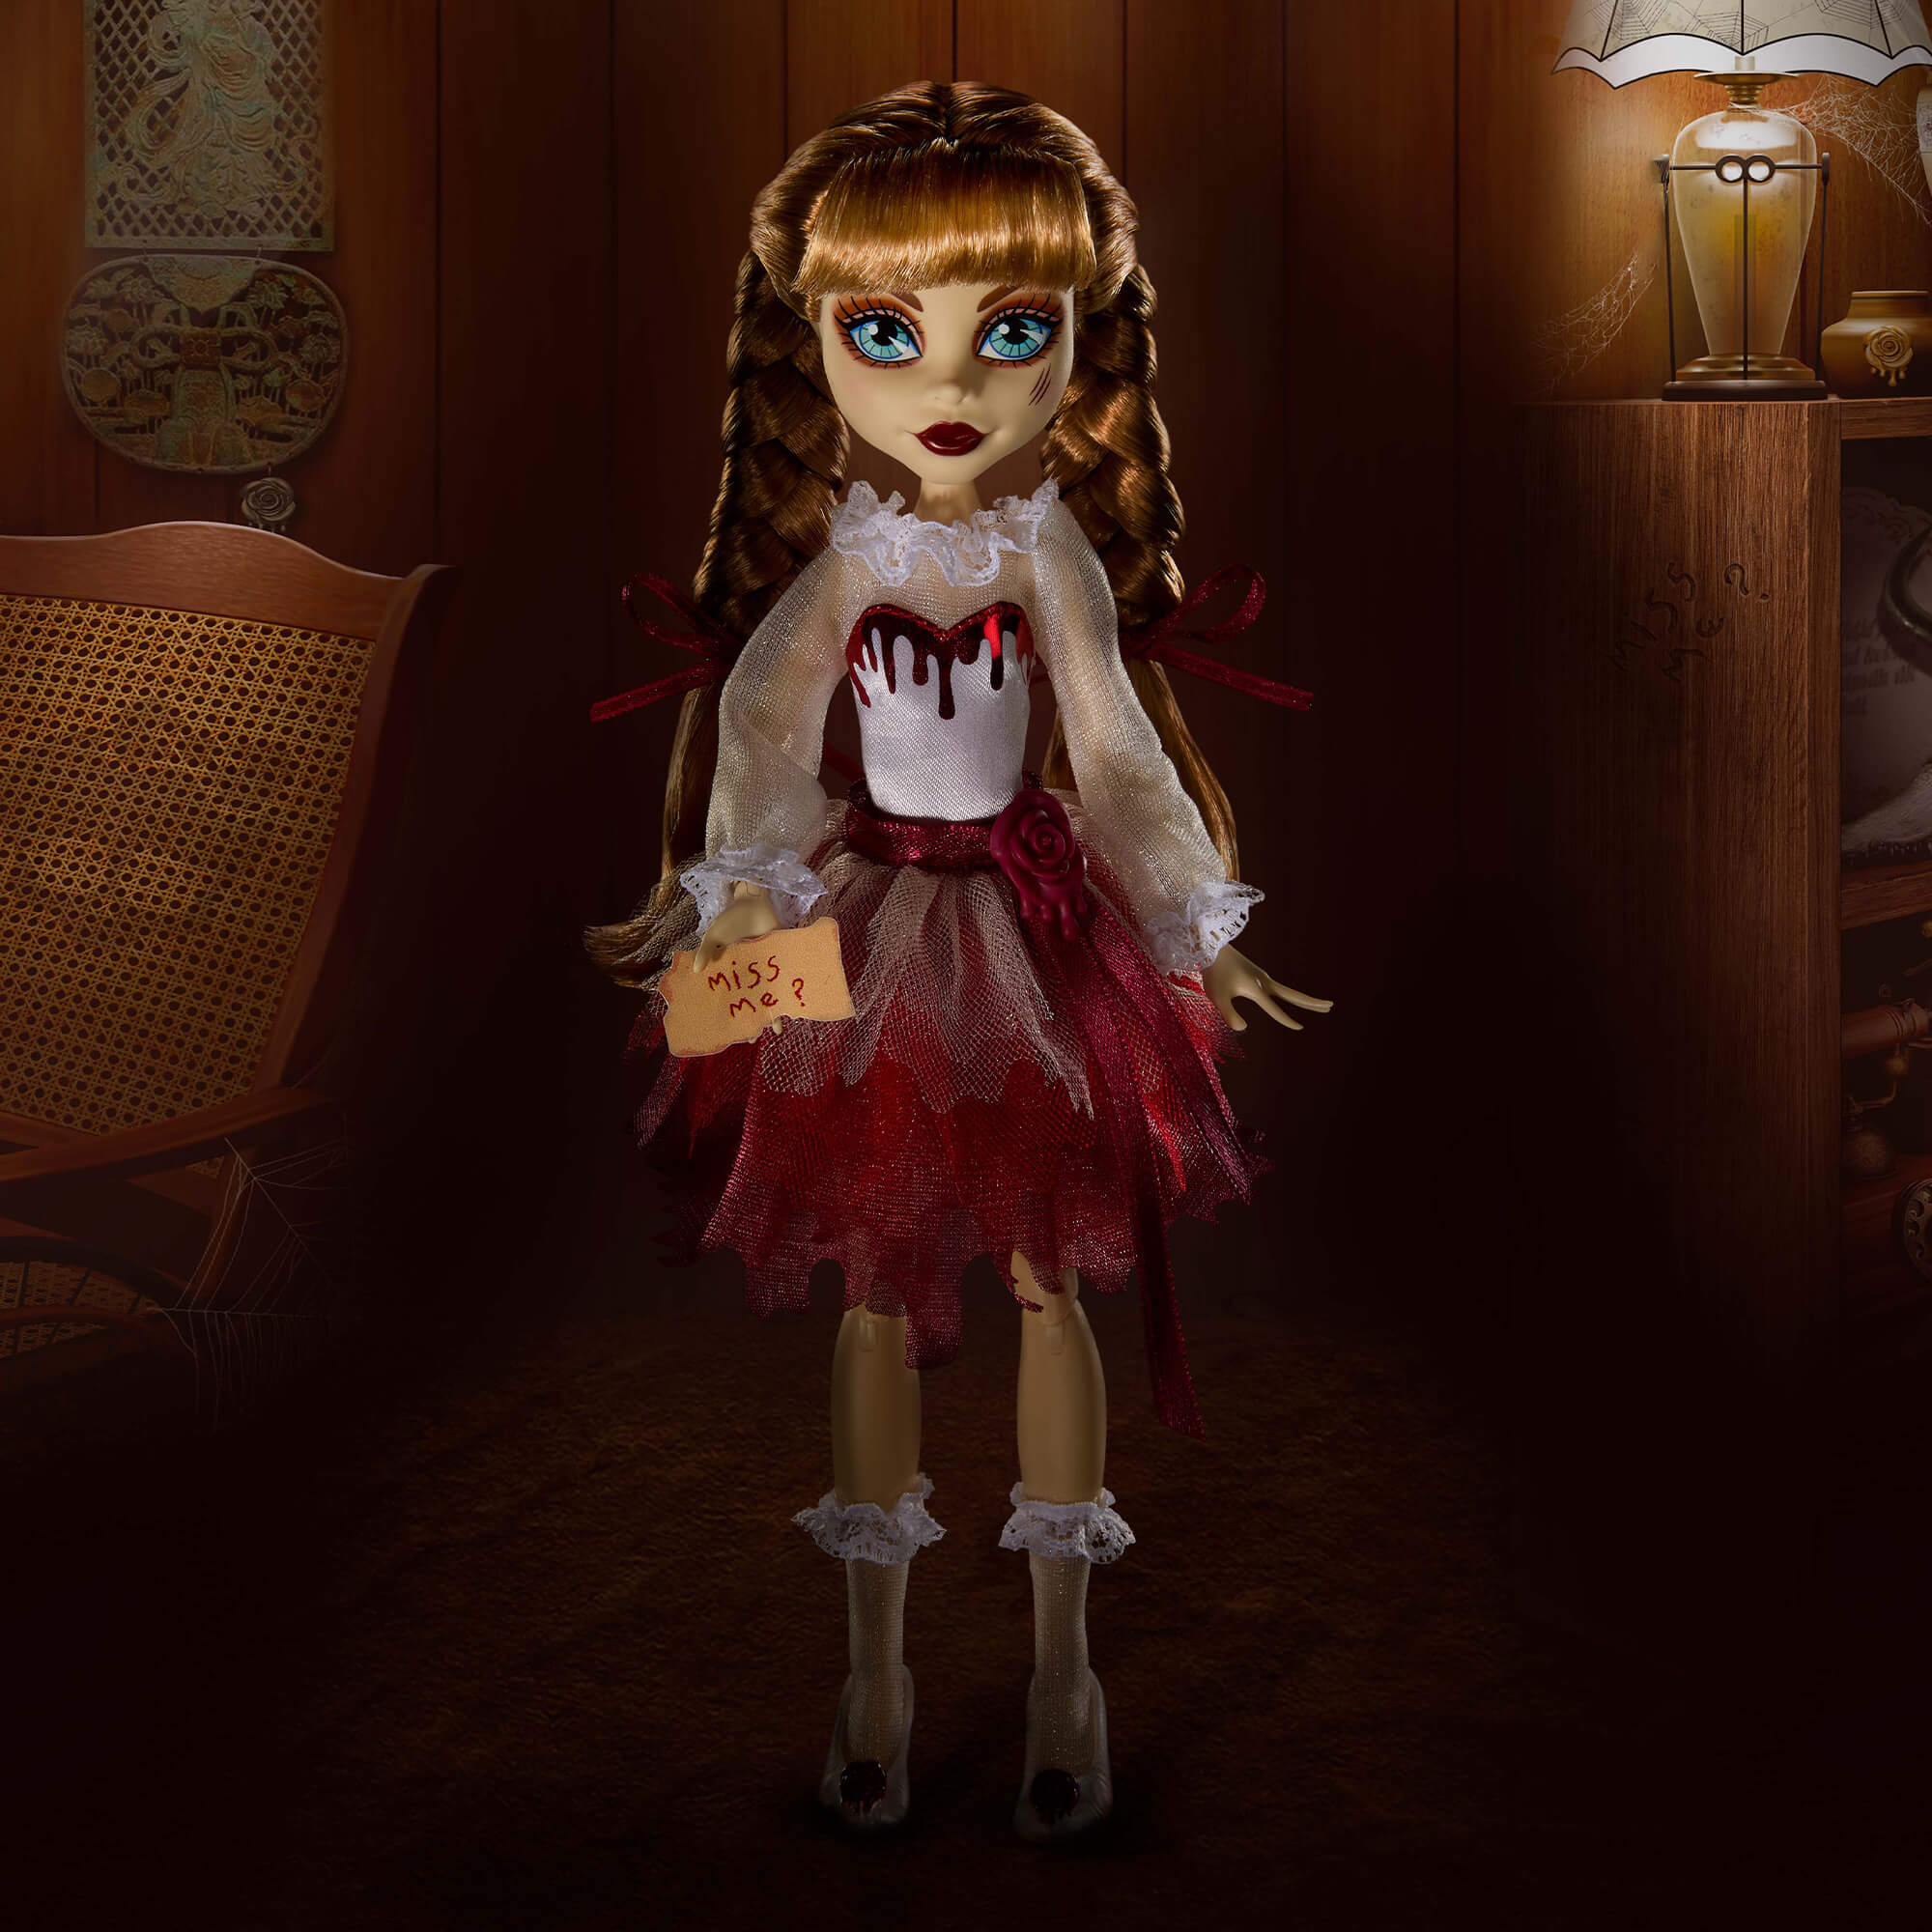 Boneca Spirit Halloween Annabelle em tamanho natural, oficialmente